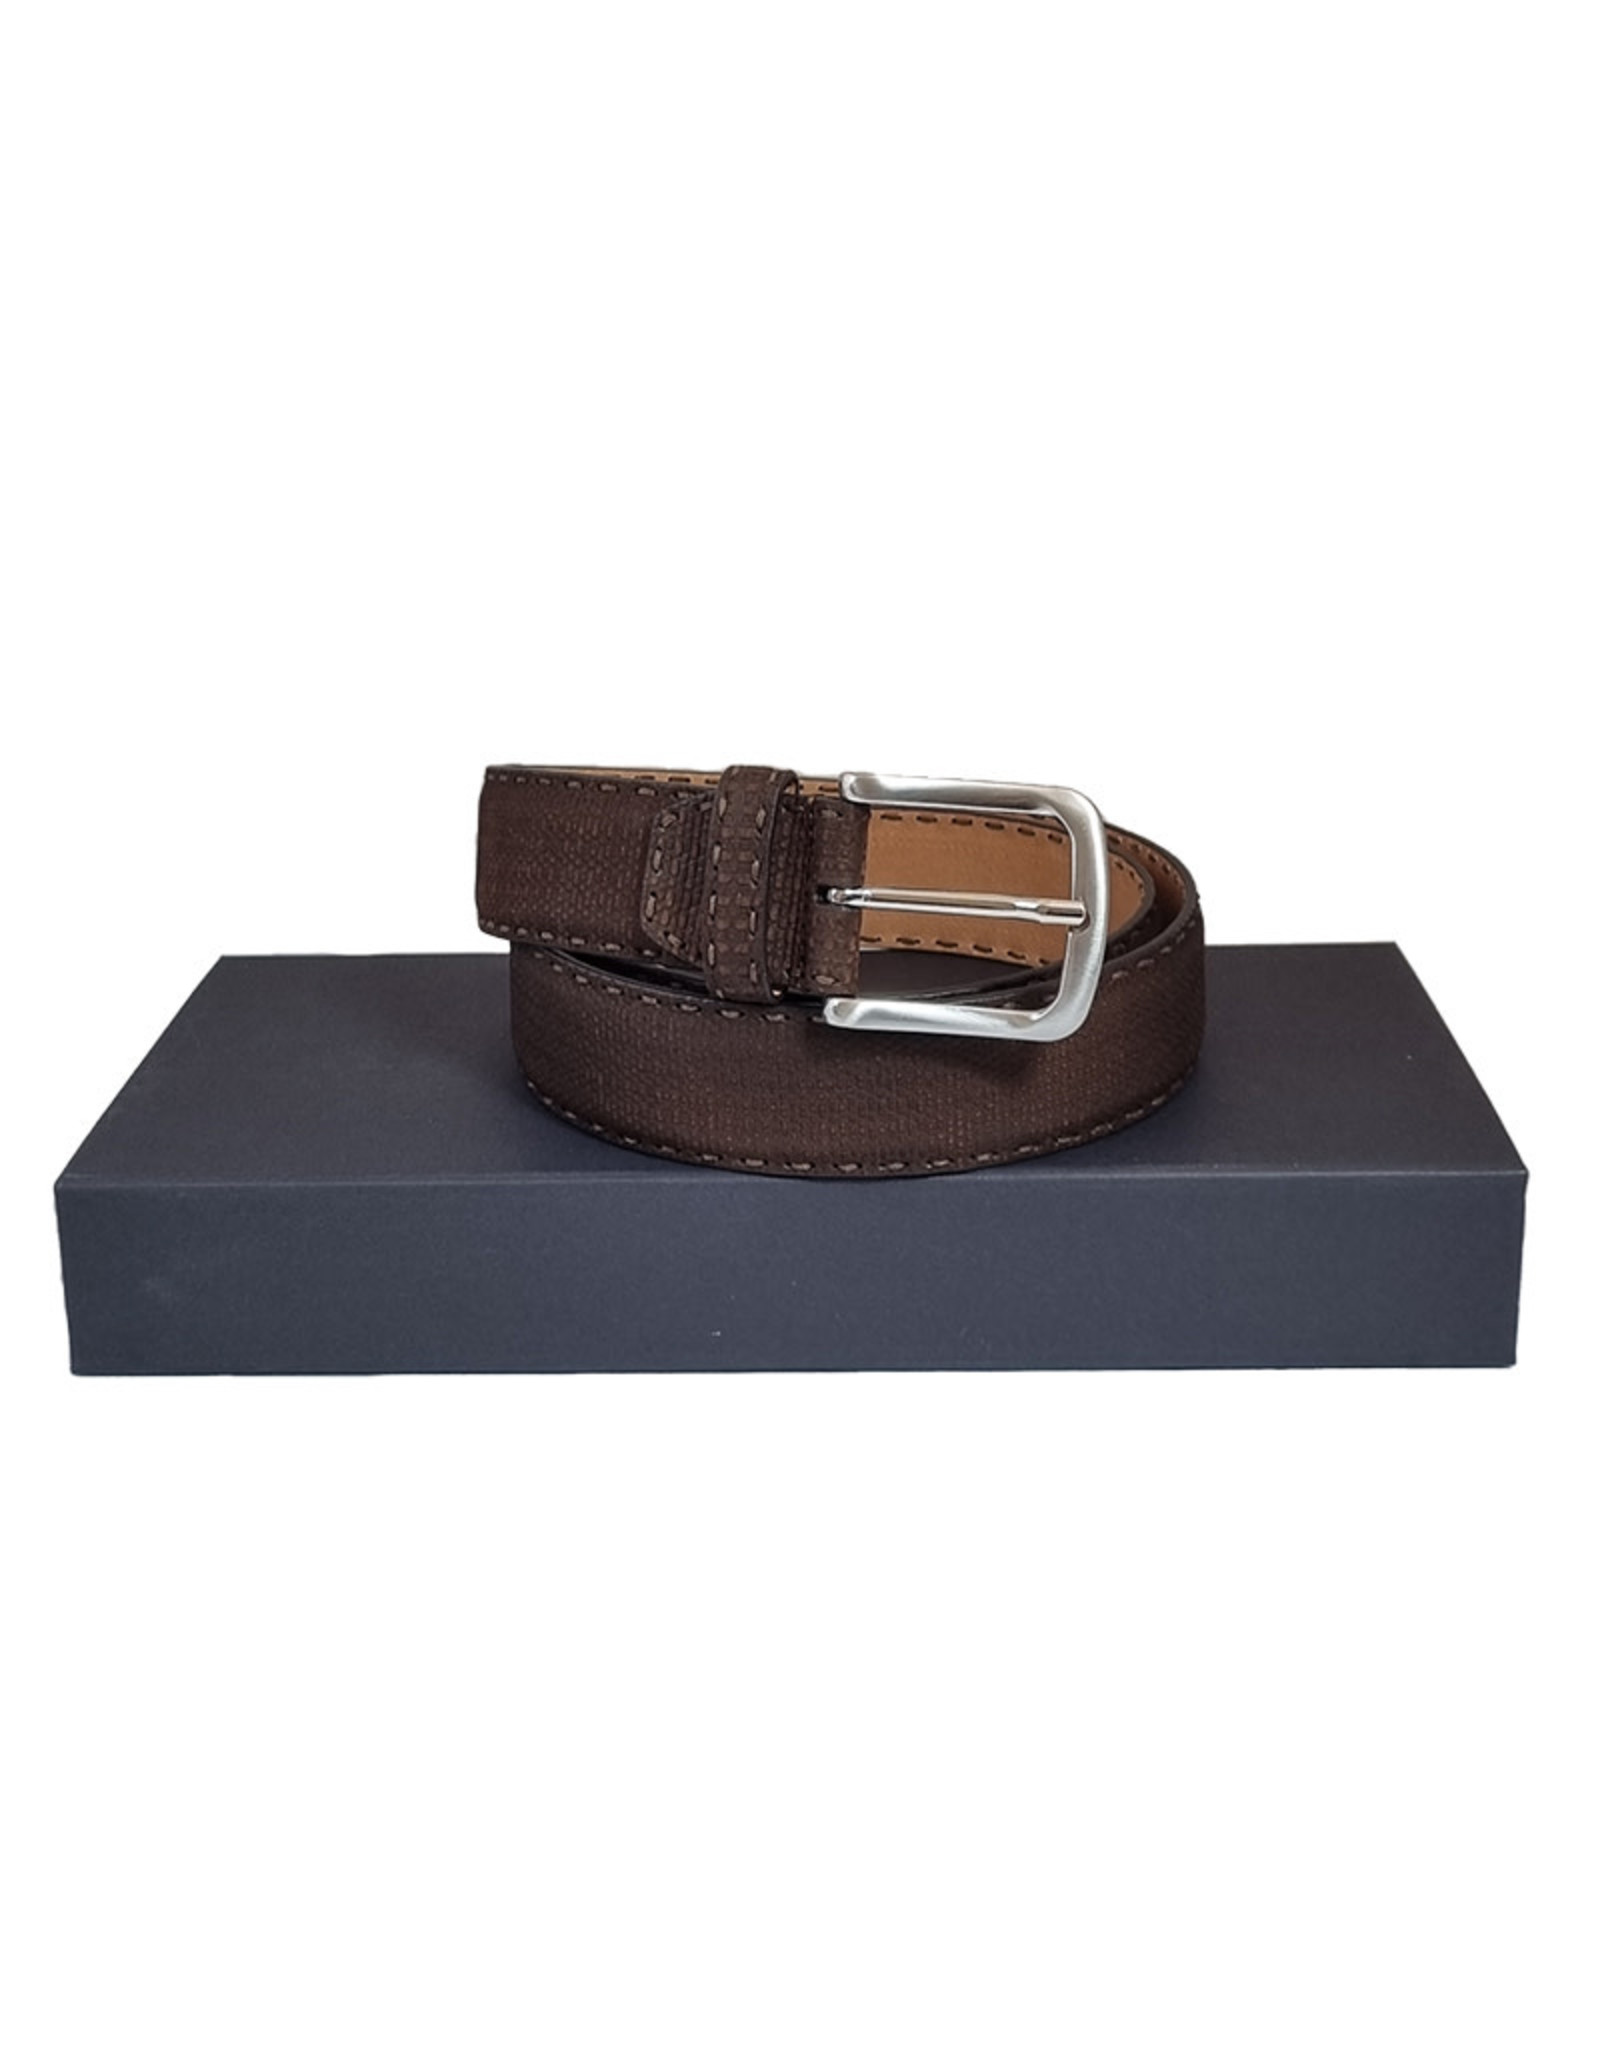 Belts+ Belts+ belt leather brown Yuta